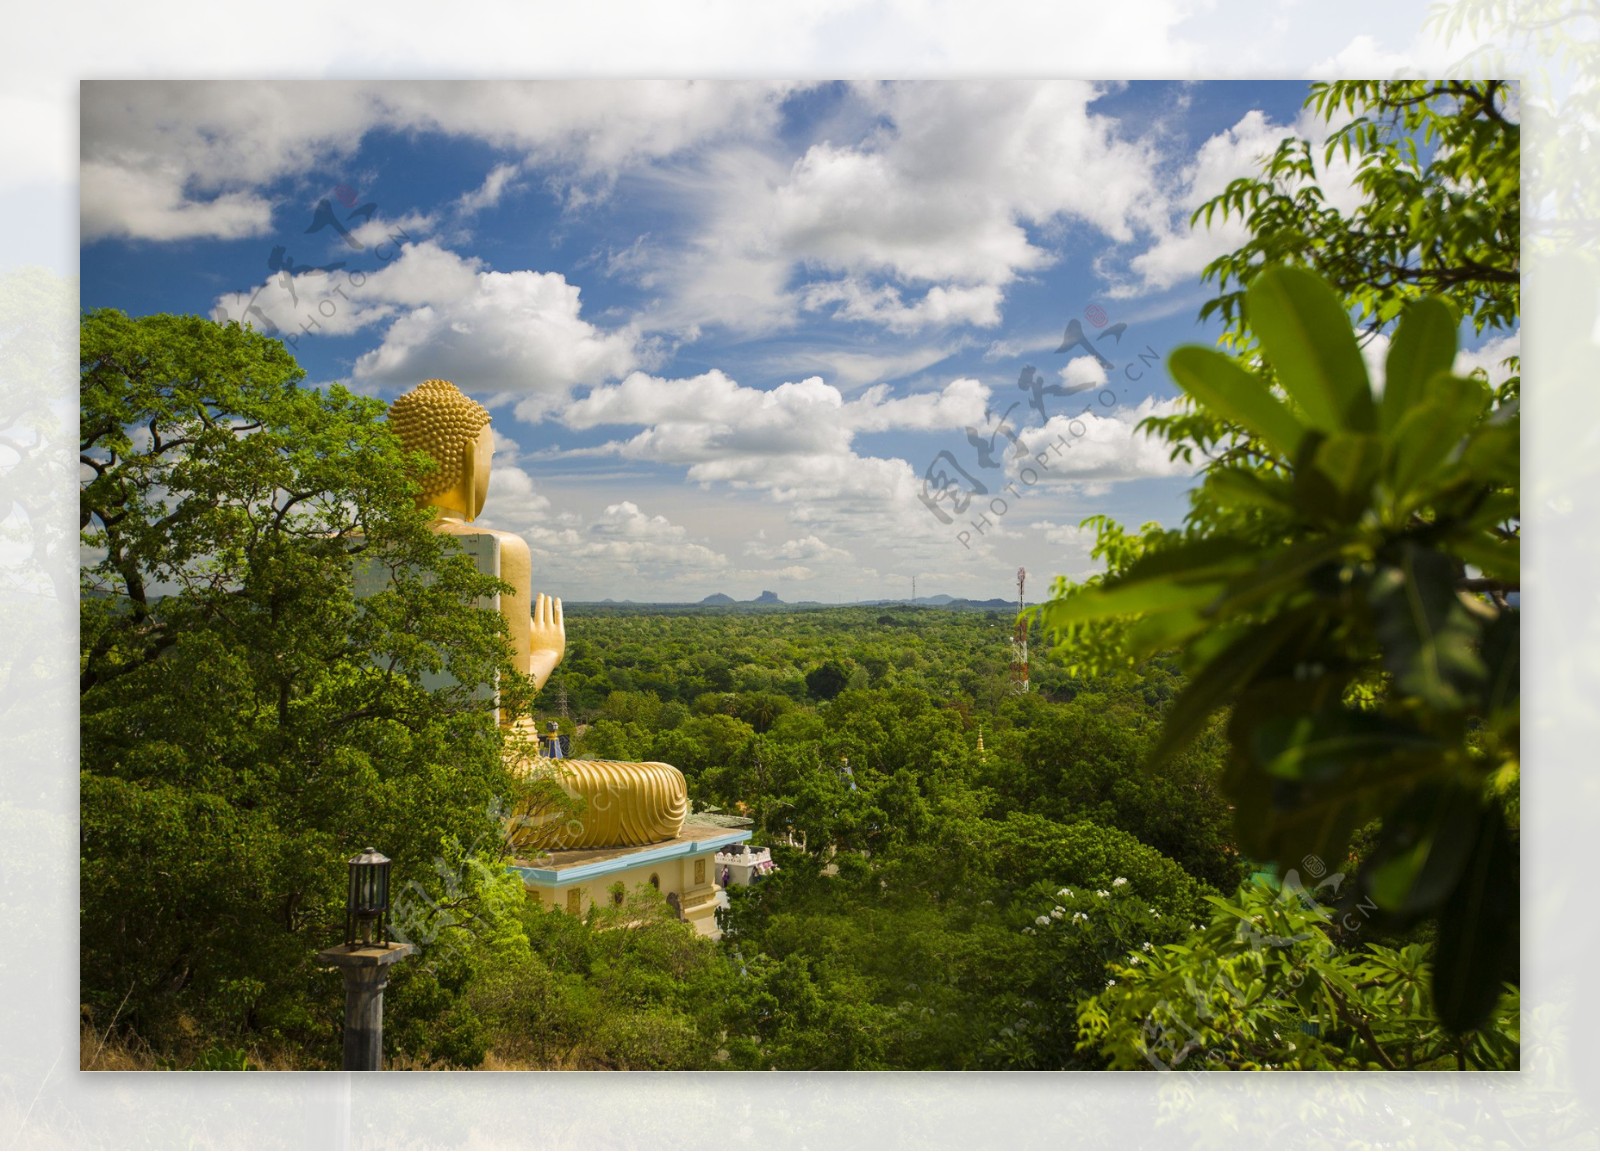 斯里兰卡丹布勒金寺风景